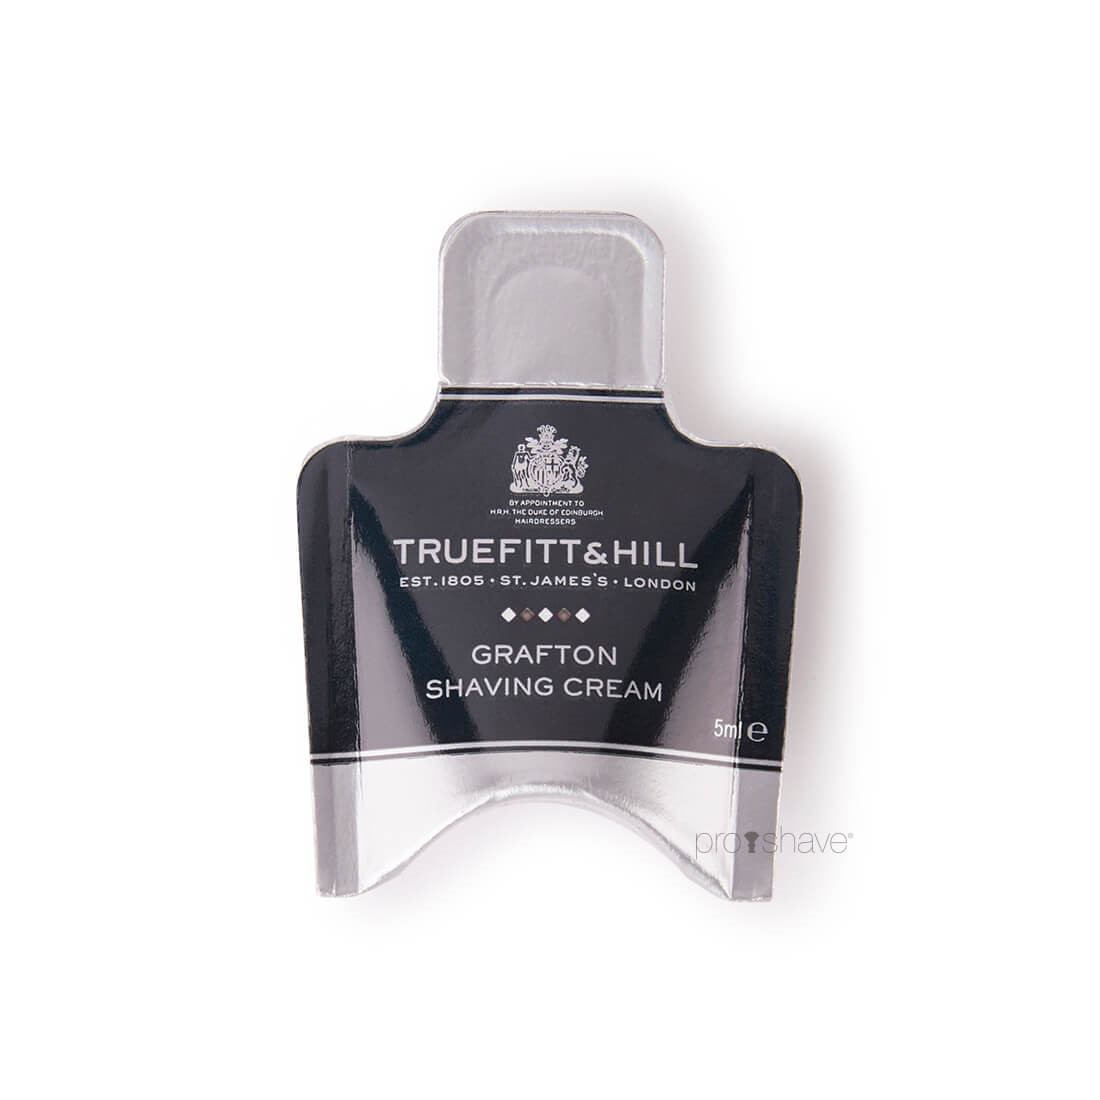 18: Truefitt & Hill Grafton Shaving Cream Sample Pack, 5 ml.